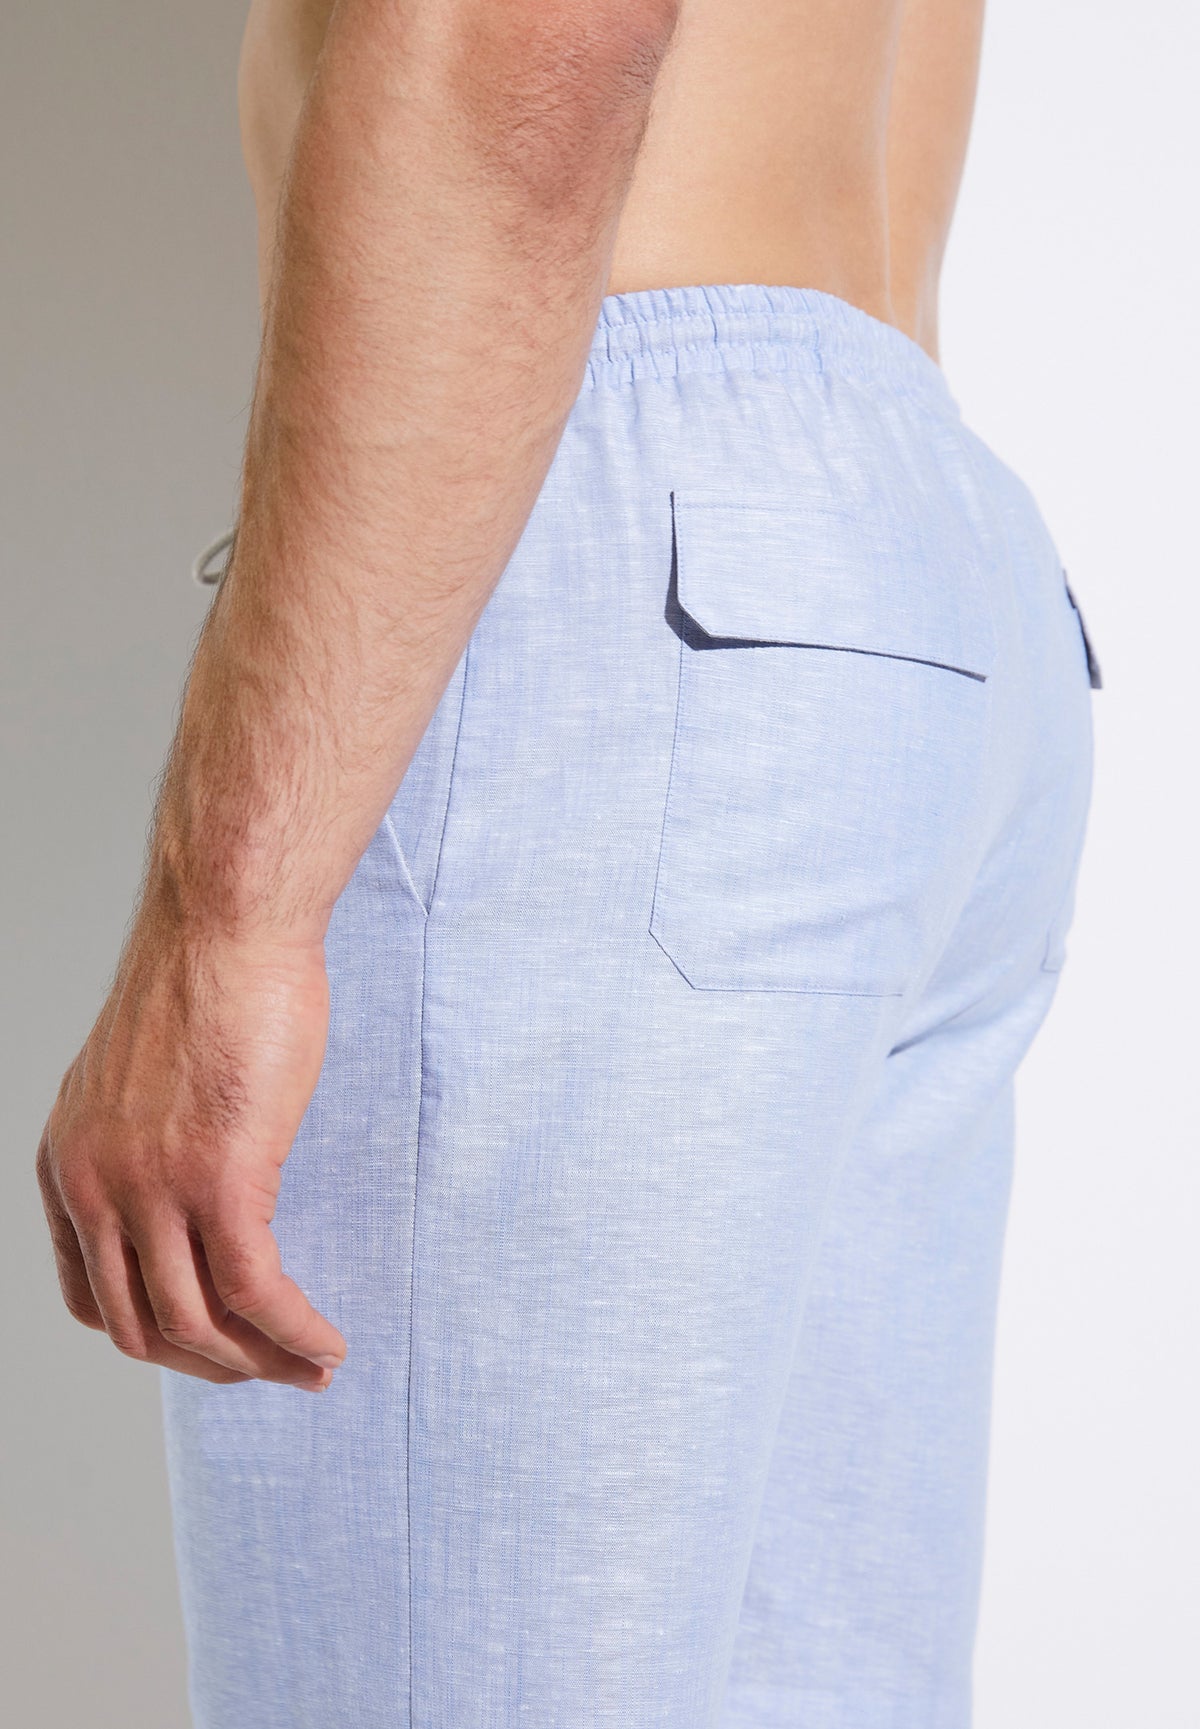 Linen Blend | Shorts - light blue